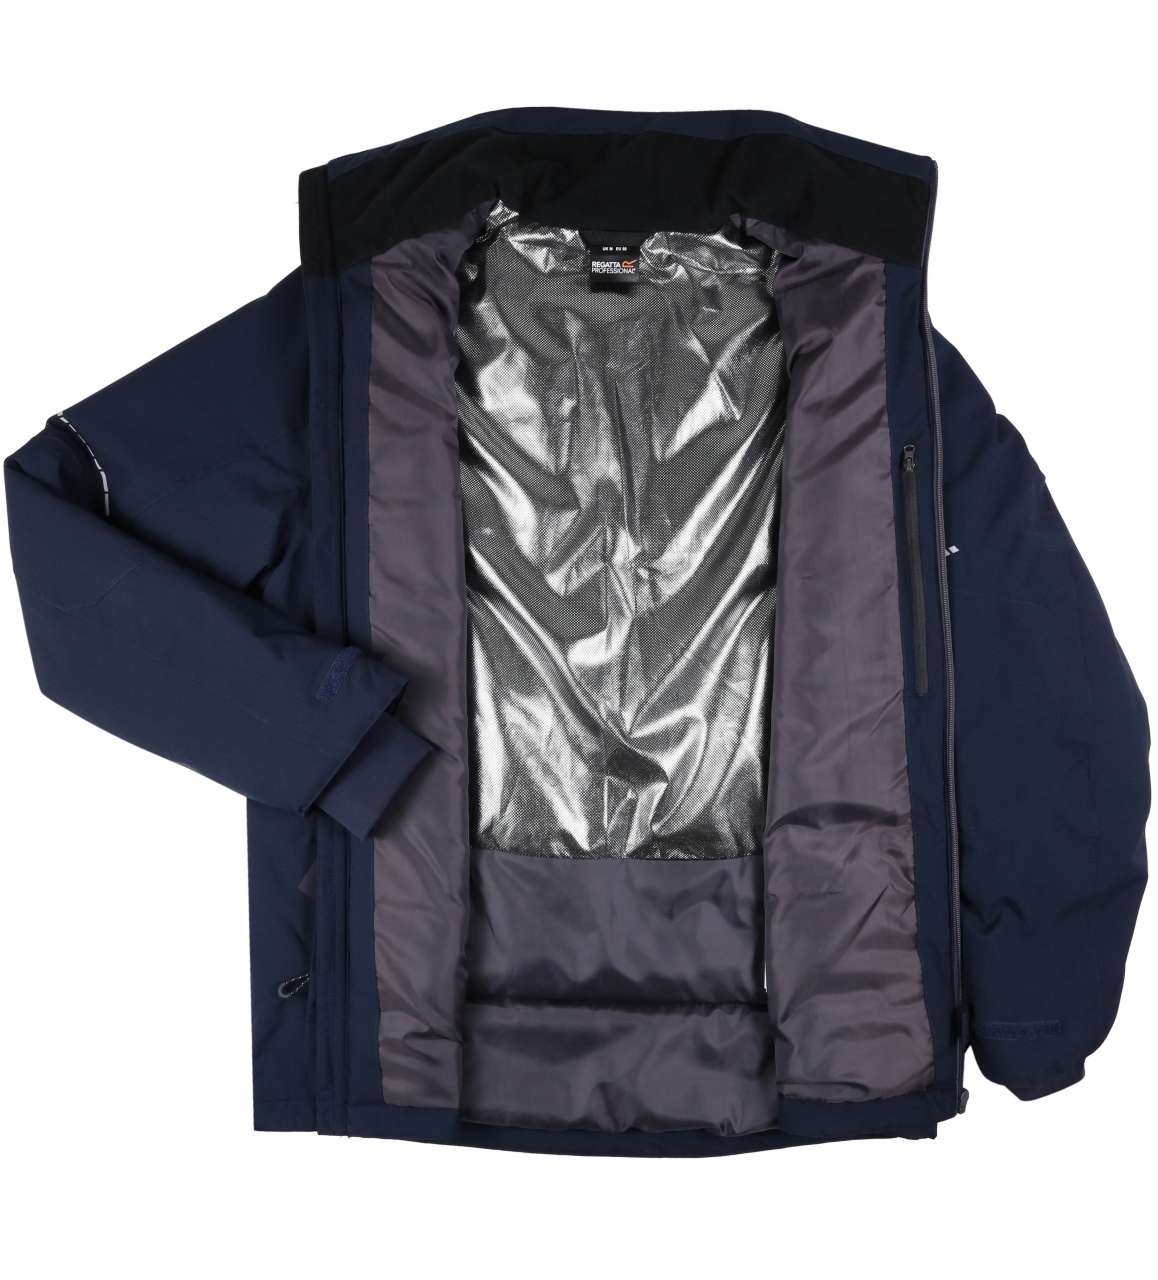 Jachetă pentru bărbați impermeabilă BRETRA208